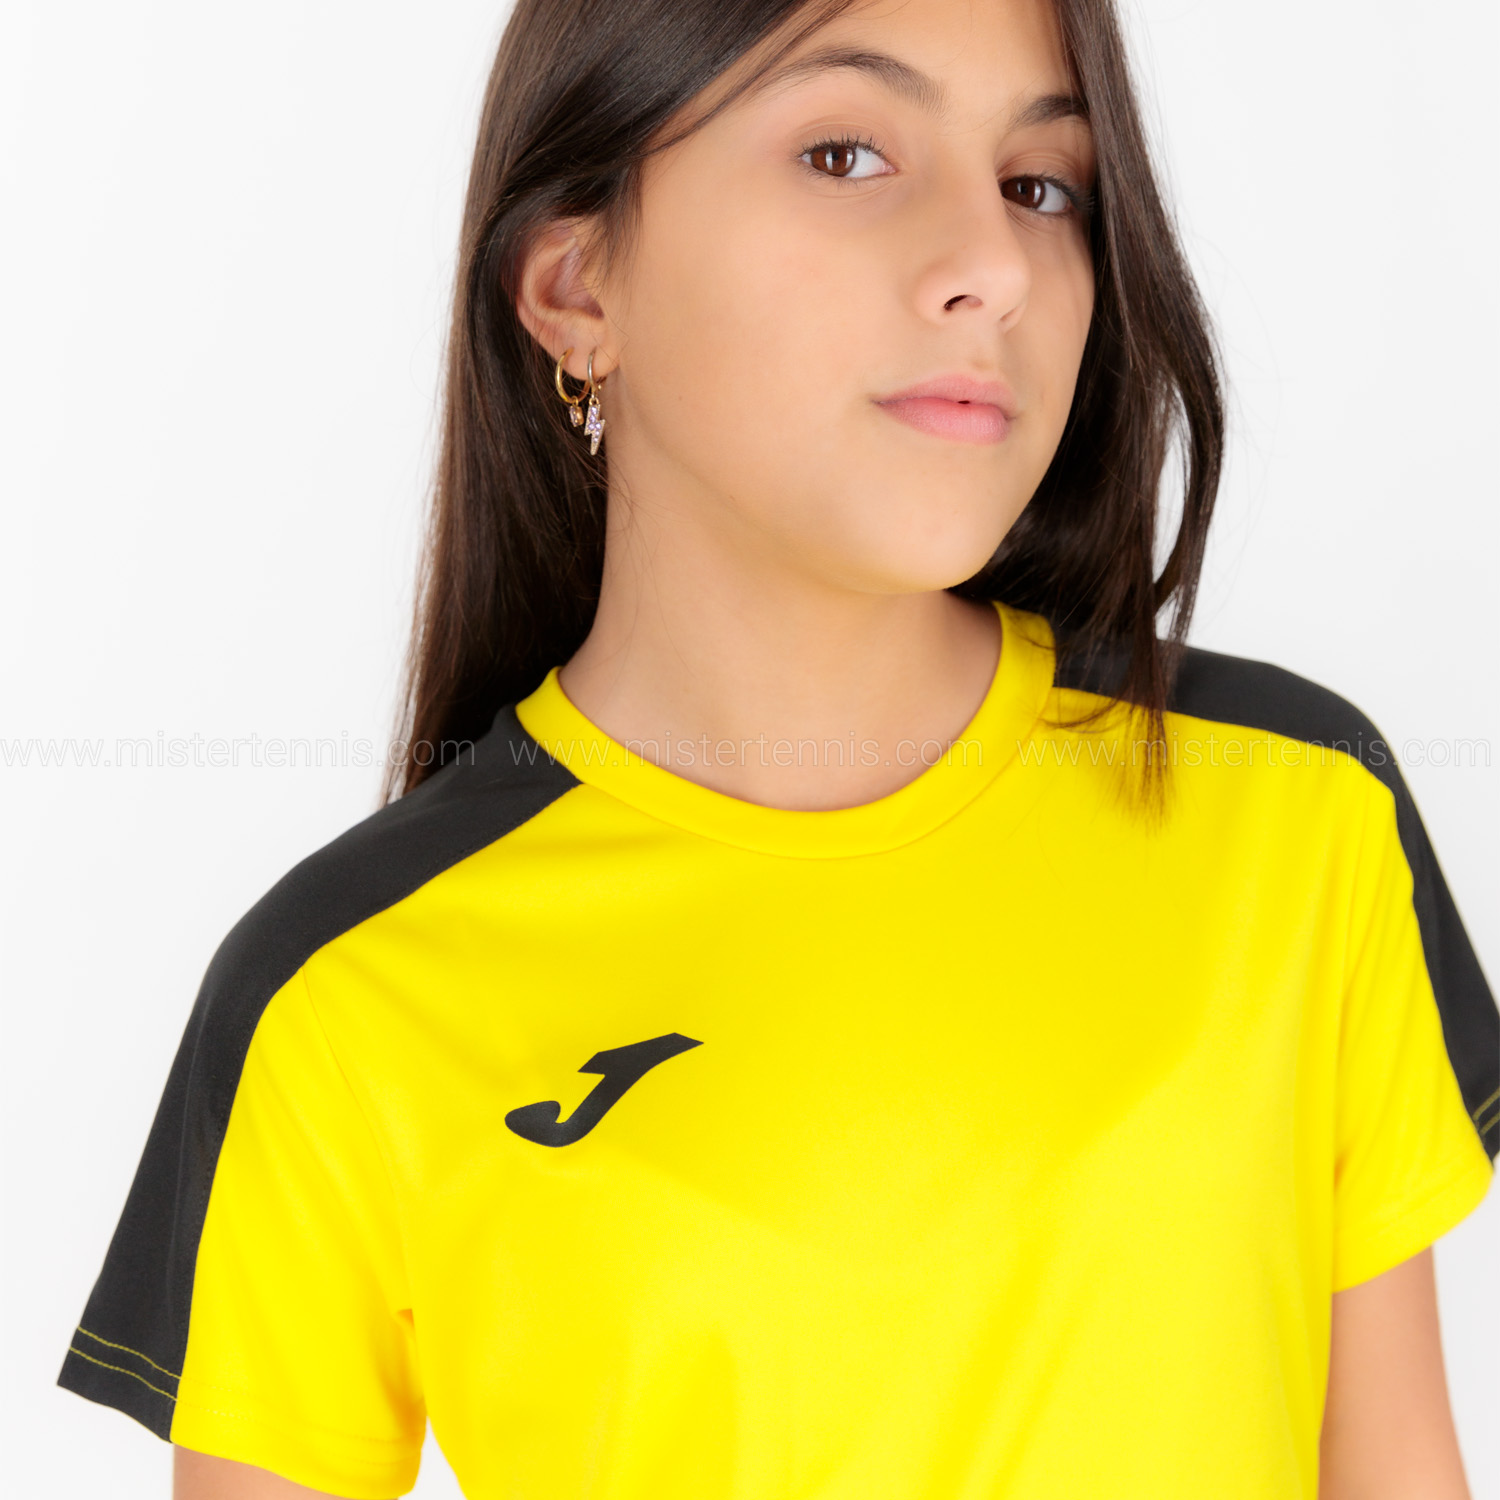 Joma Academy III T-Shirt Girls - Yellow/Black